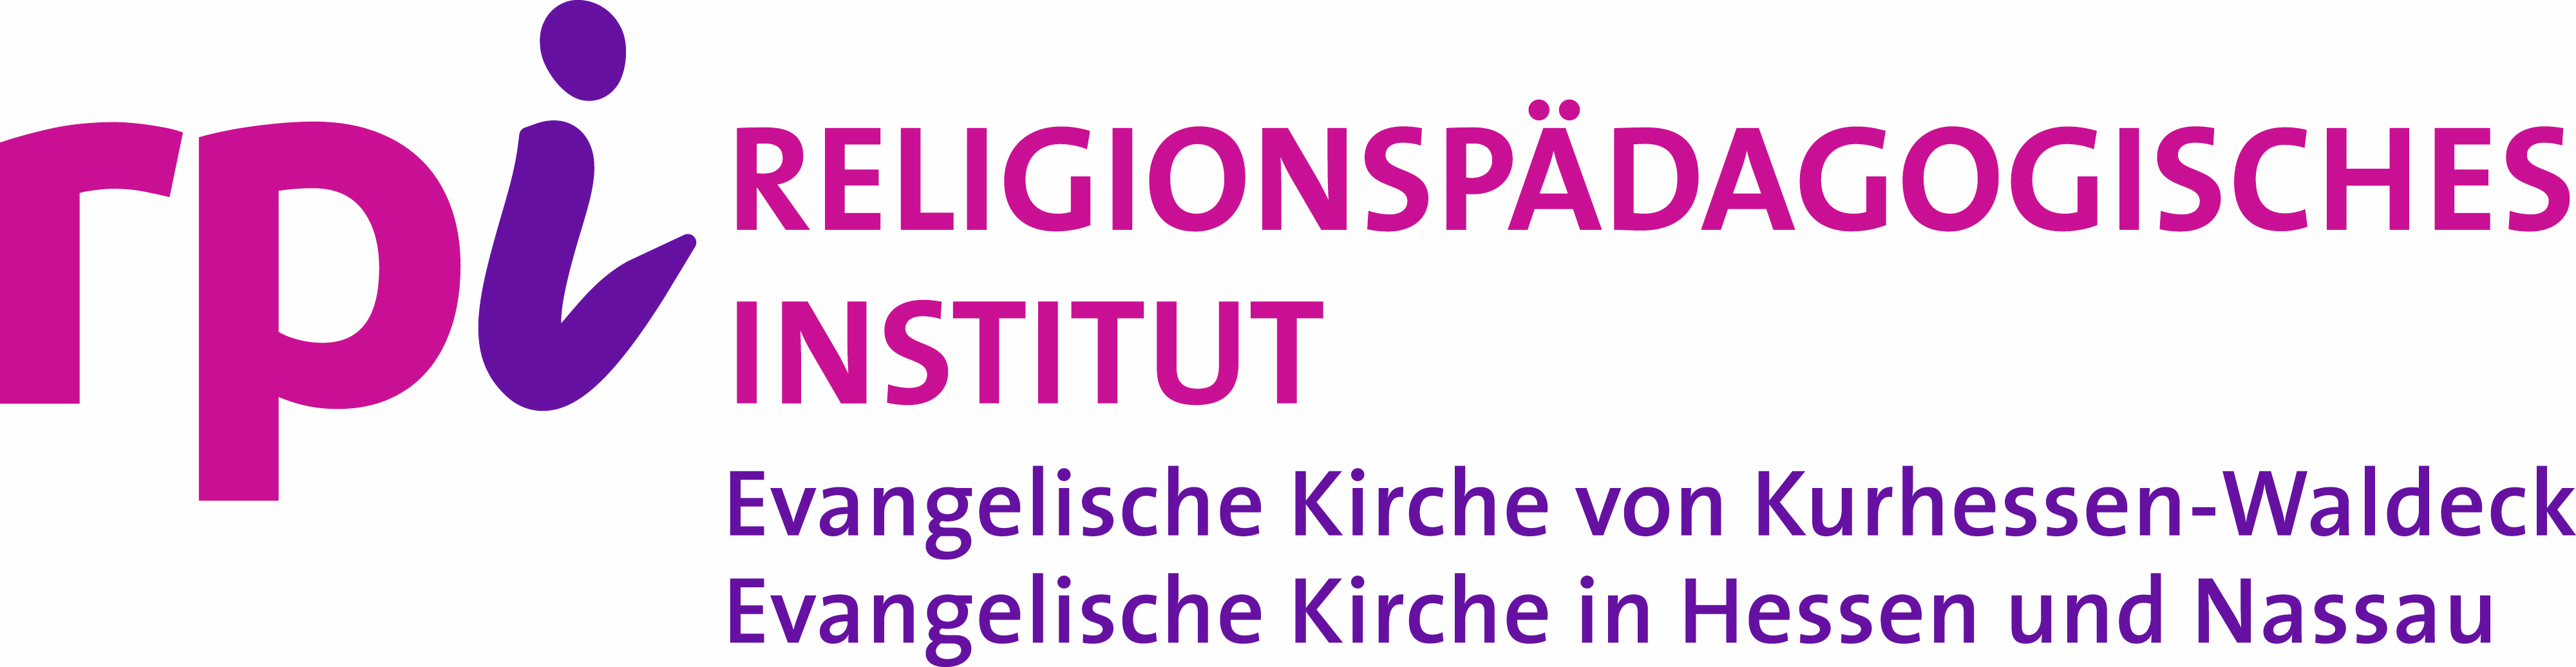 Religionspädagogisches Institut der EKKW und EKHN